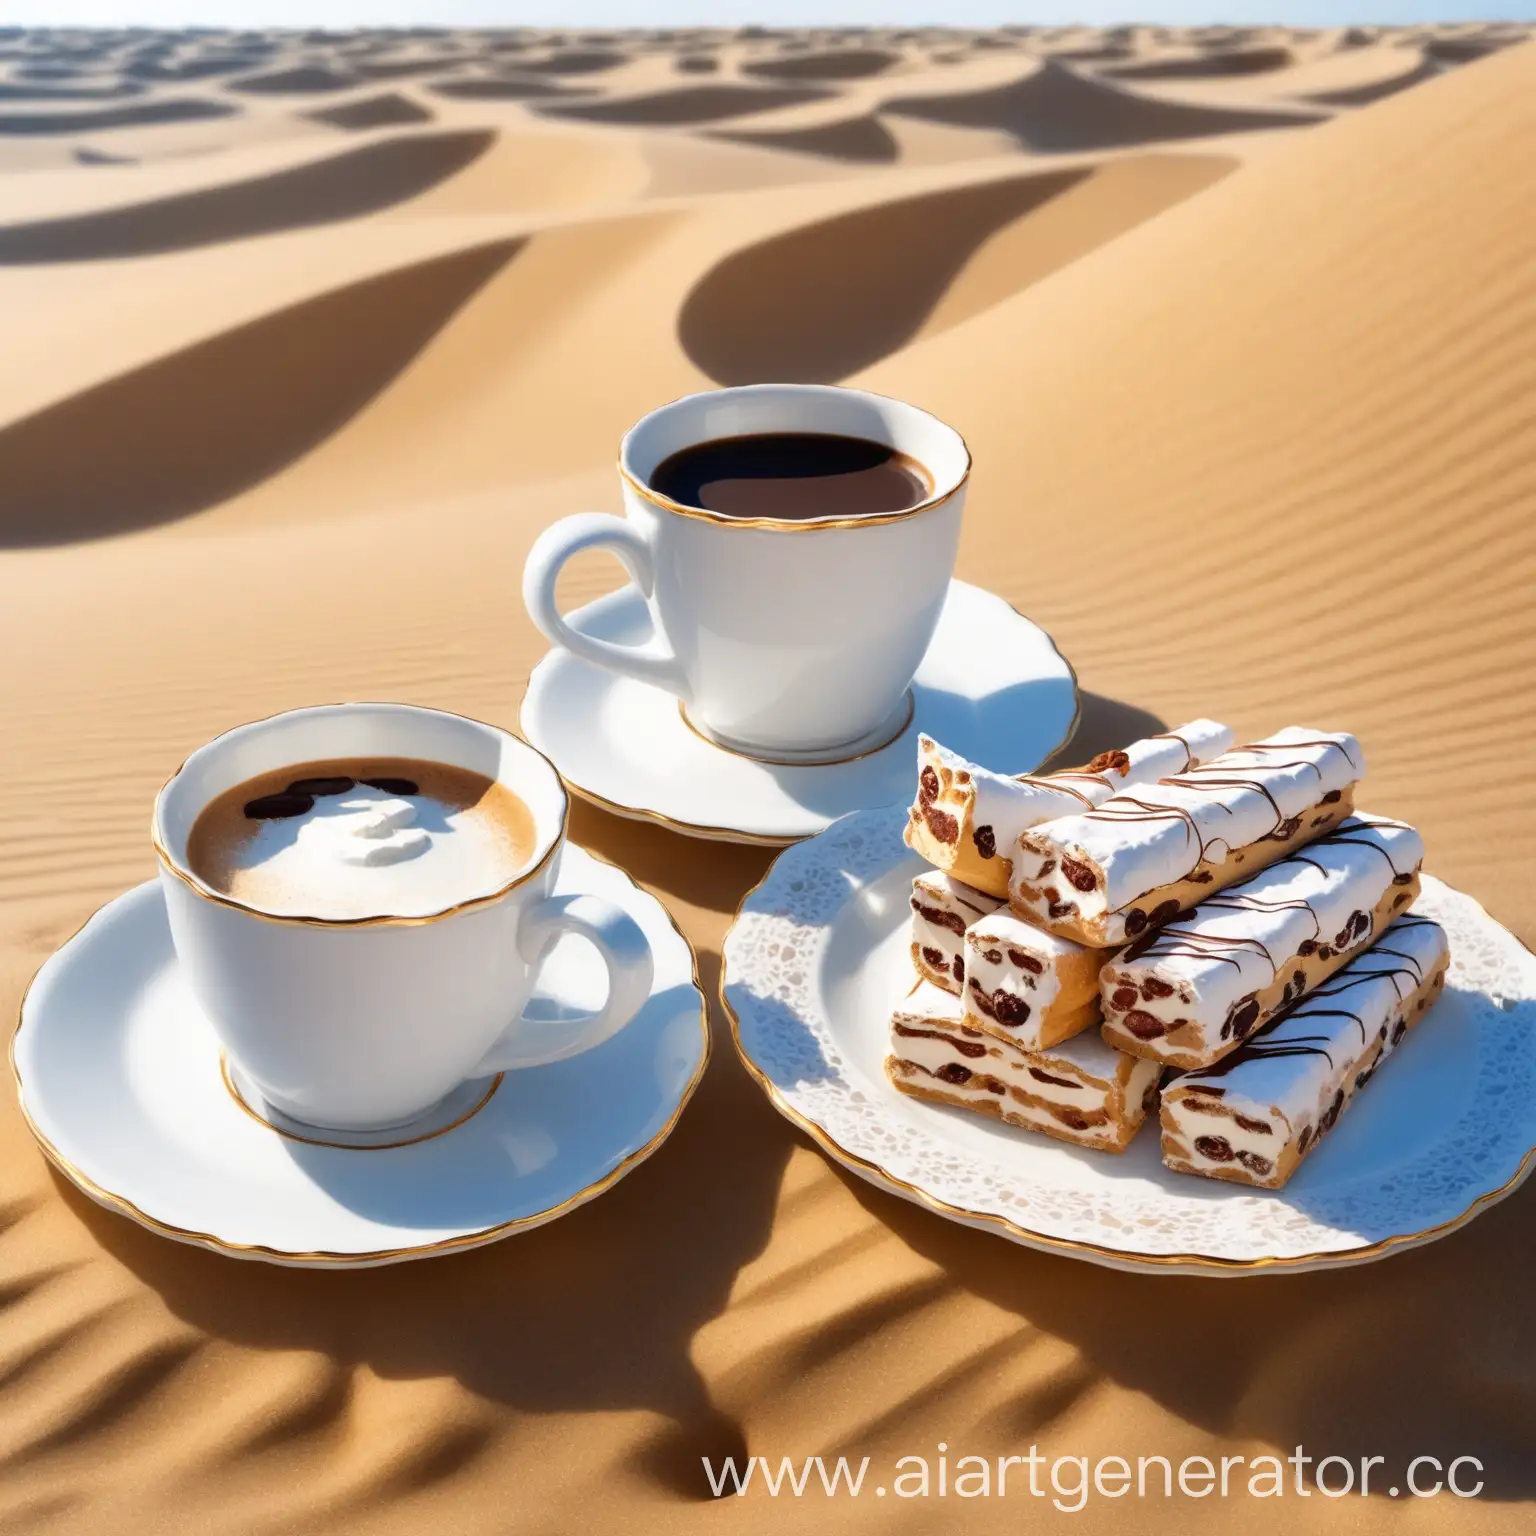 дюны. на песке стоит чашка кофе и кусочек ароматного торда на блюдце. все выглядит очень романтично и аппетитно